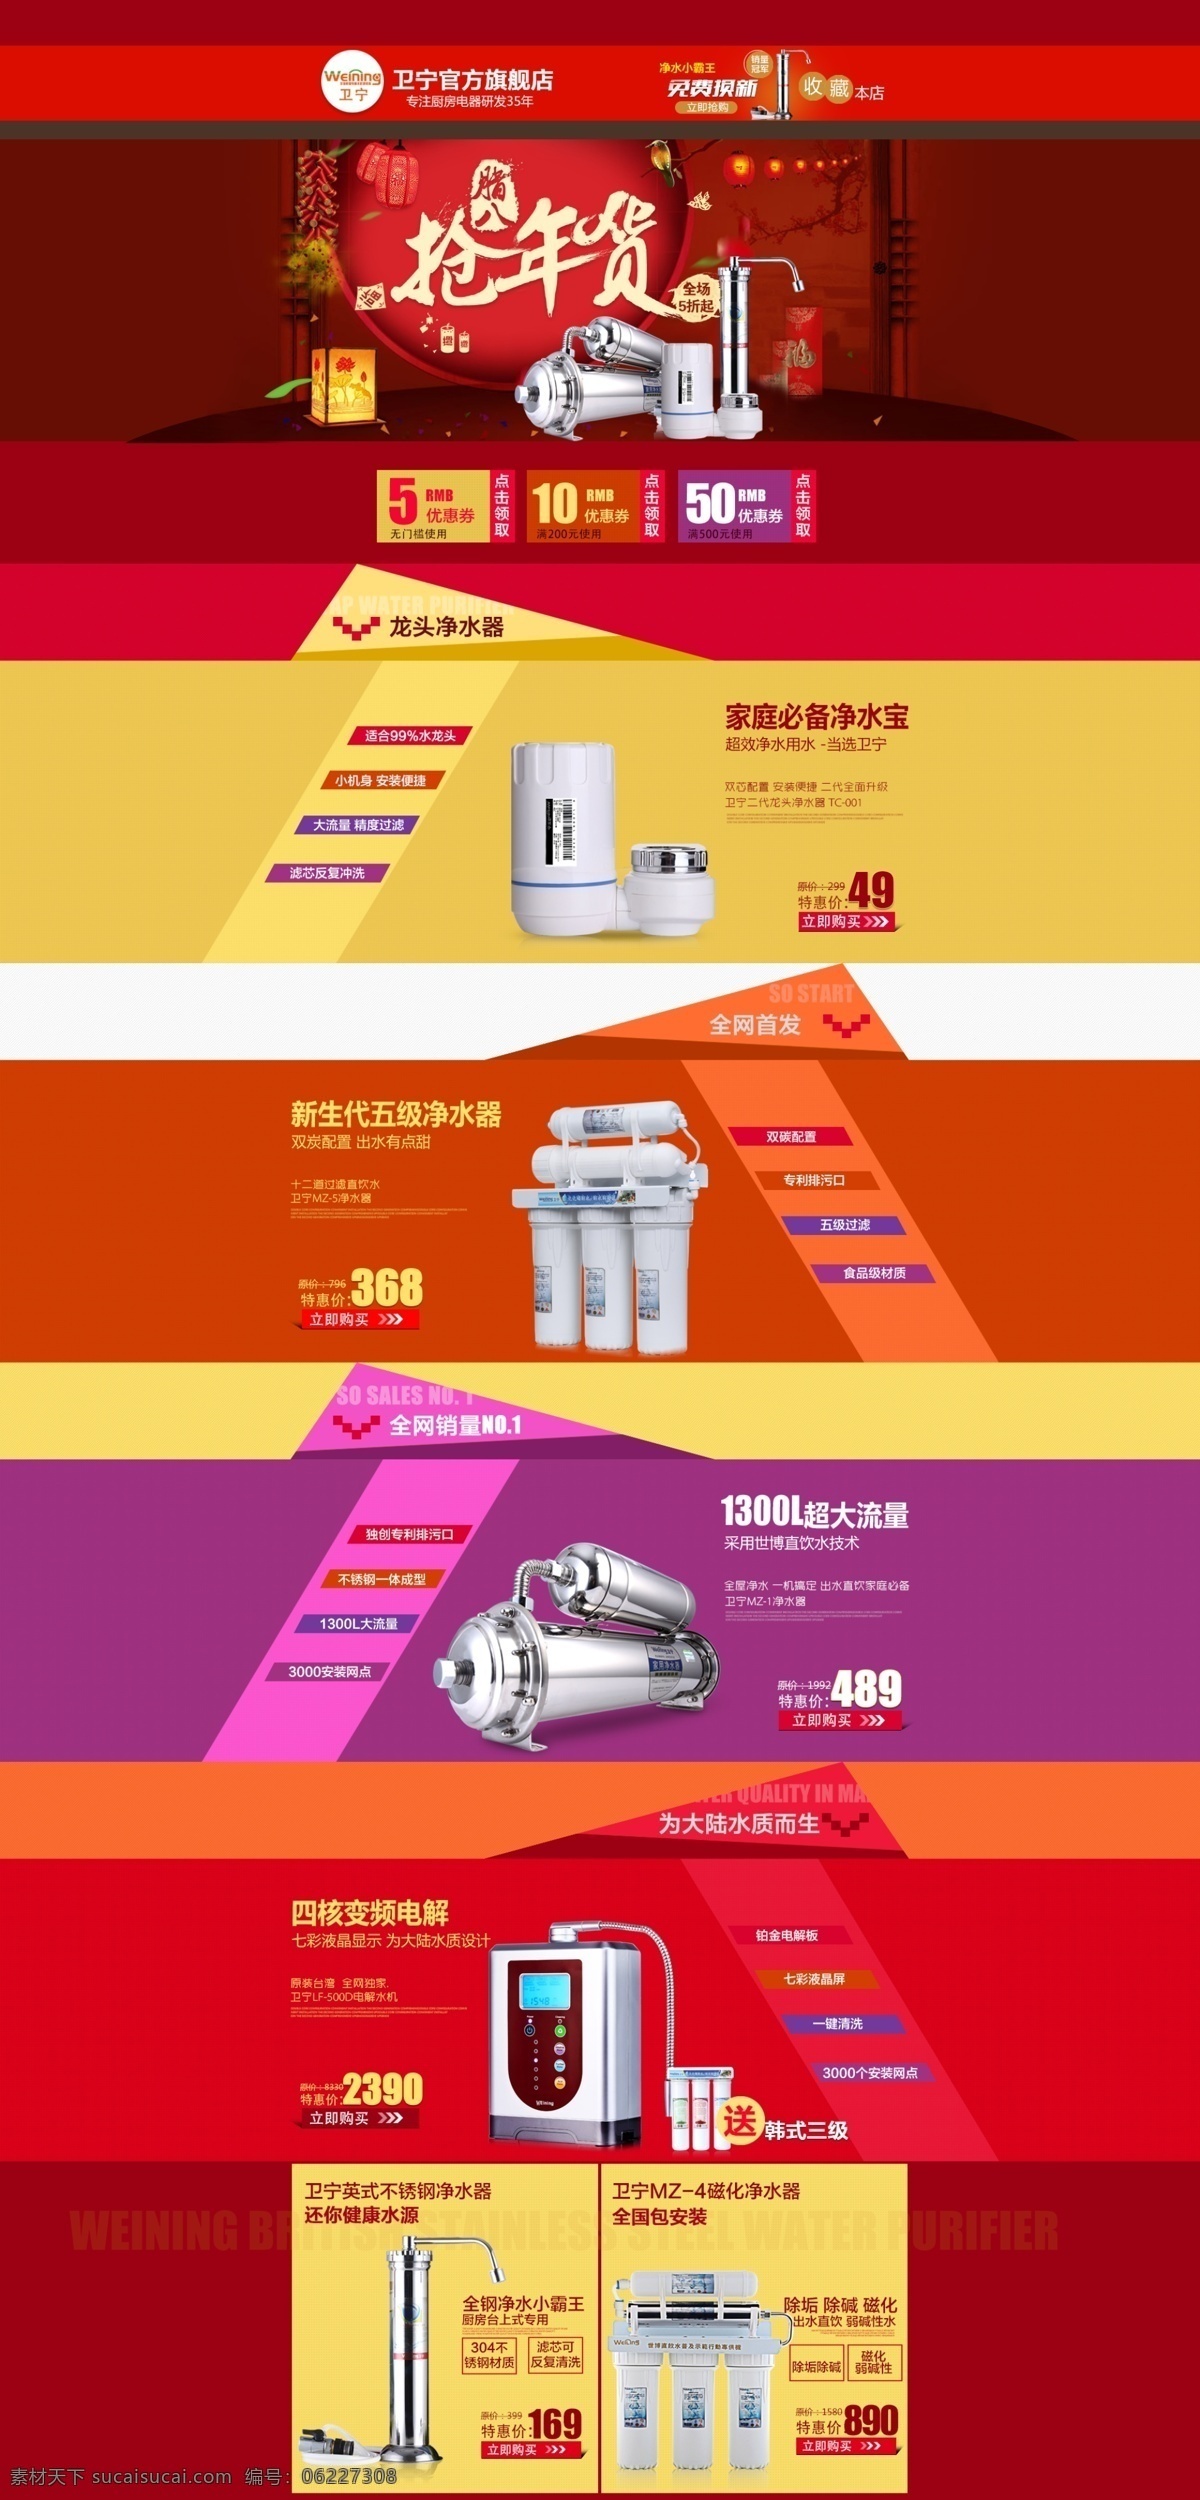 首页 腊八节 电器 生活电器 唯美 水 生活 web 界面设计 中文模板 红色